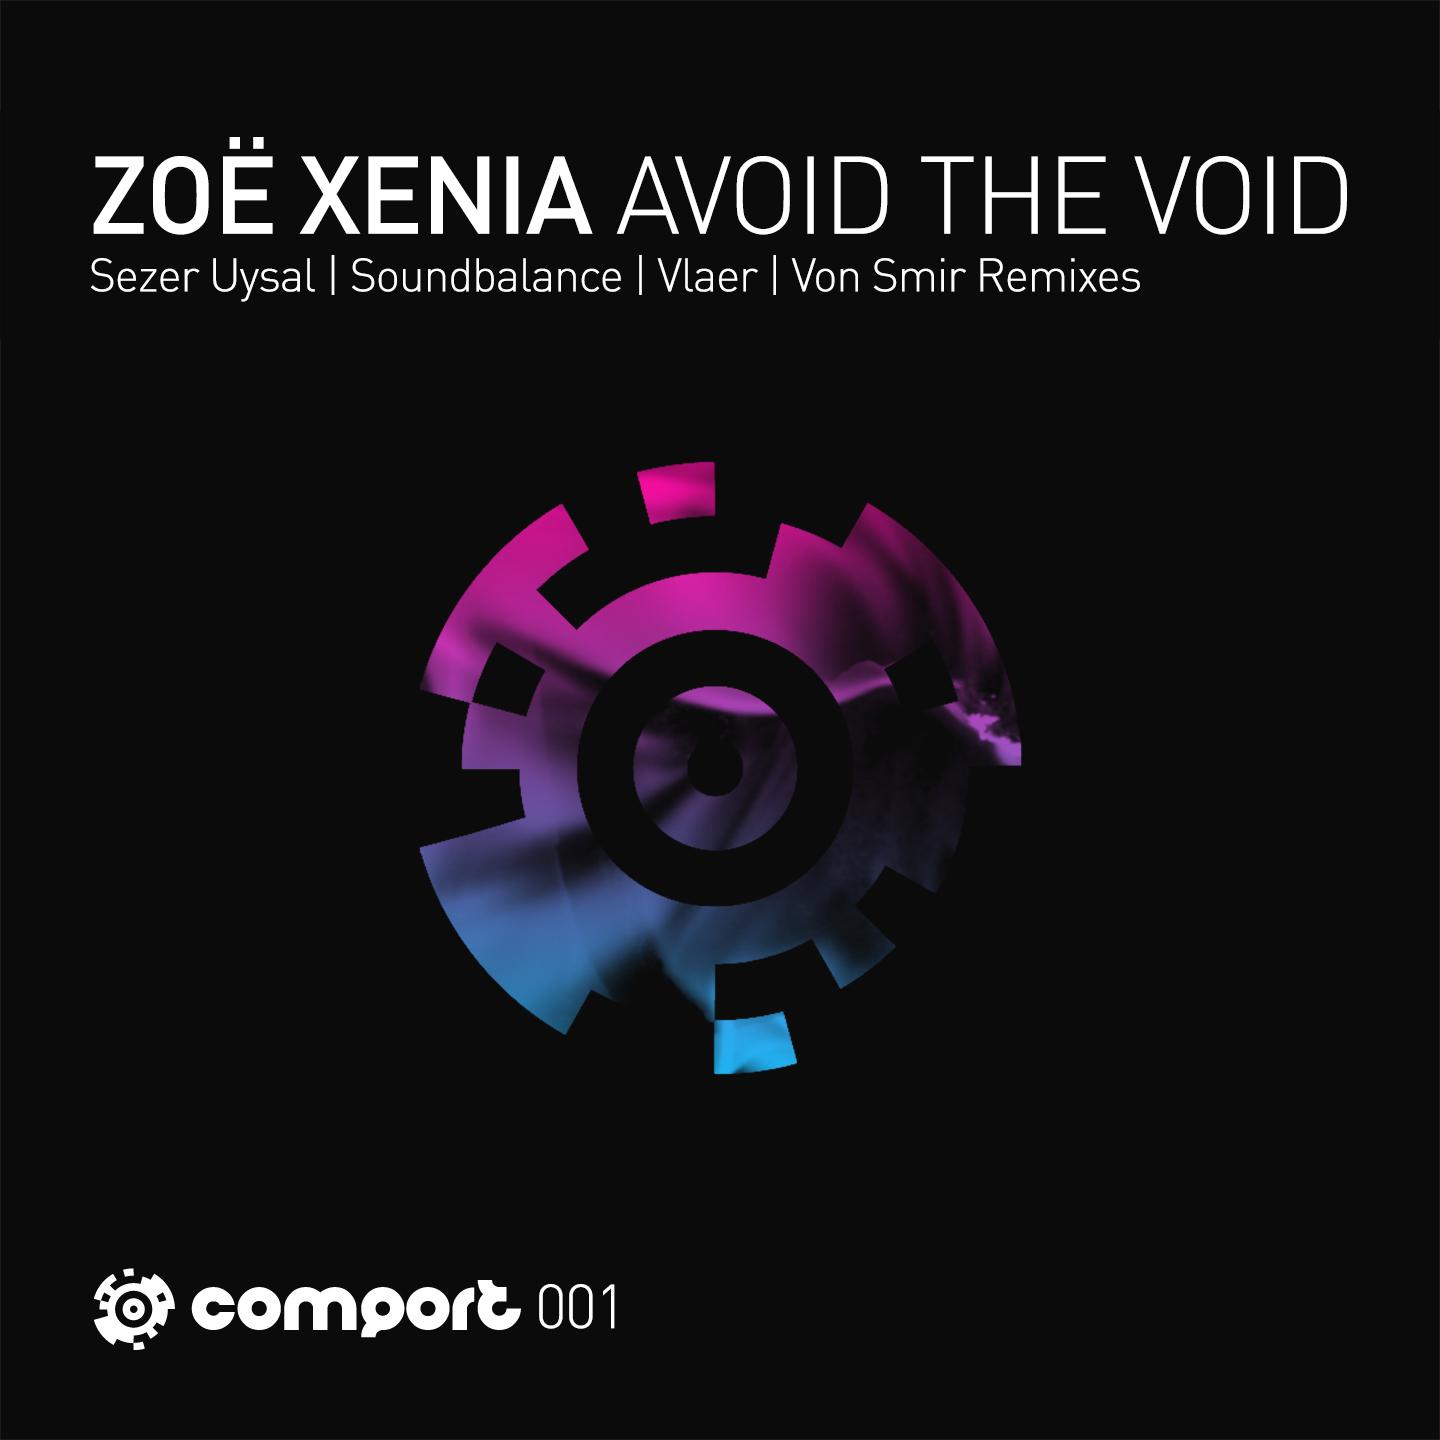 Avoid the Void (Soundbalance Remix)